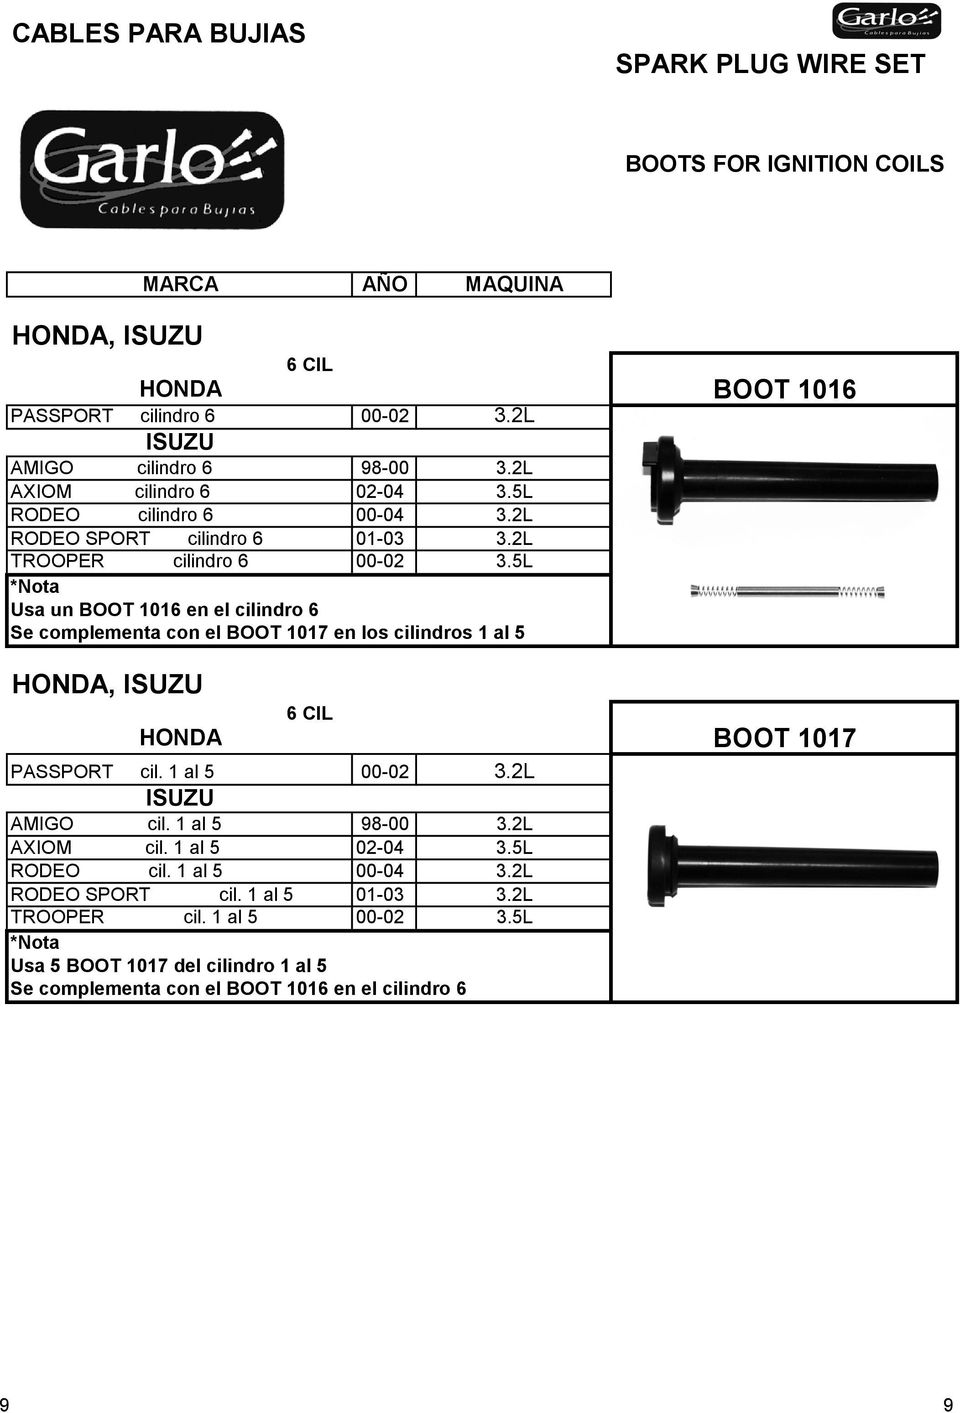 5L *Nota Usa un BOOT 1016 en el cilindro 6 Se complementa con el BOOT 1017 en los cilindros 1 al 5 HONDA, ISUZU HONDA PASSPORT cil. 1 al 5 00-02 3.2L ISUZU AMIGO cil.